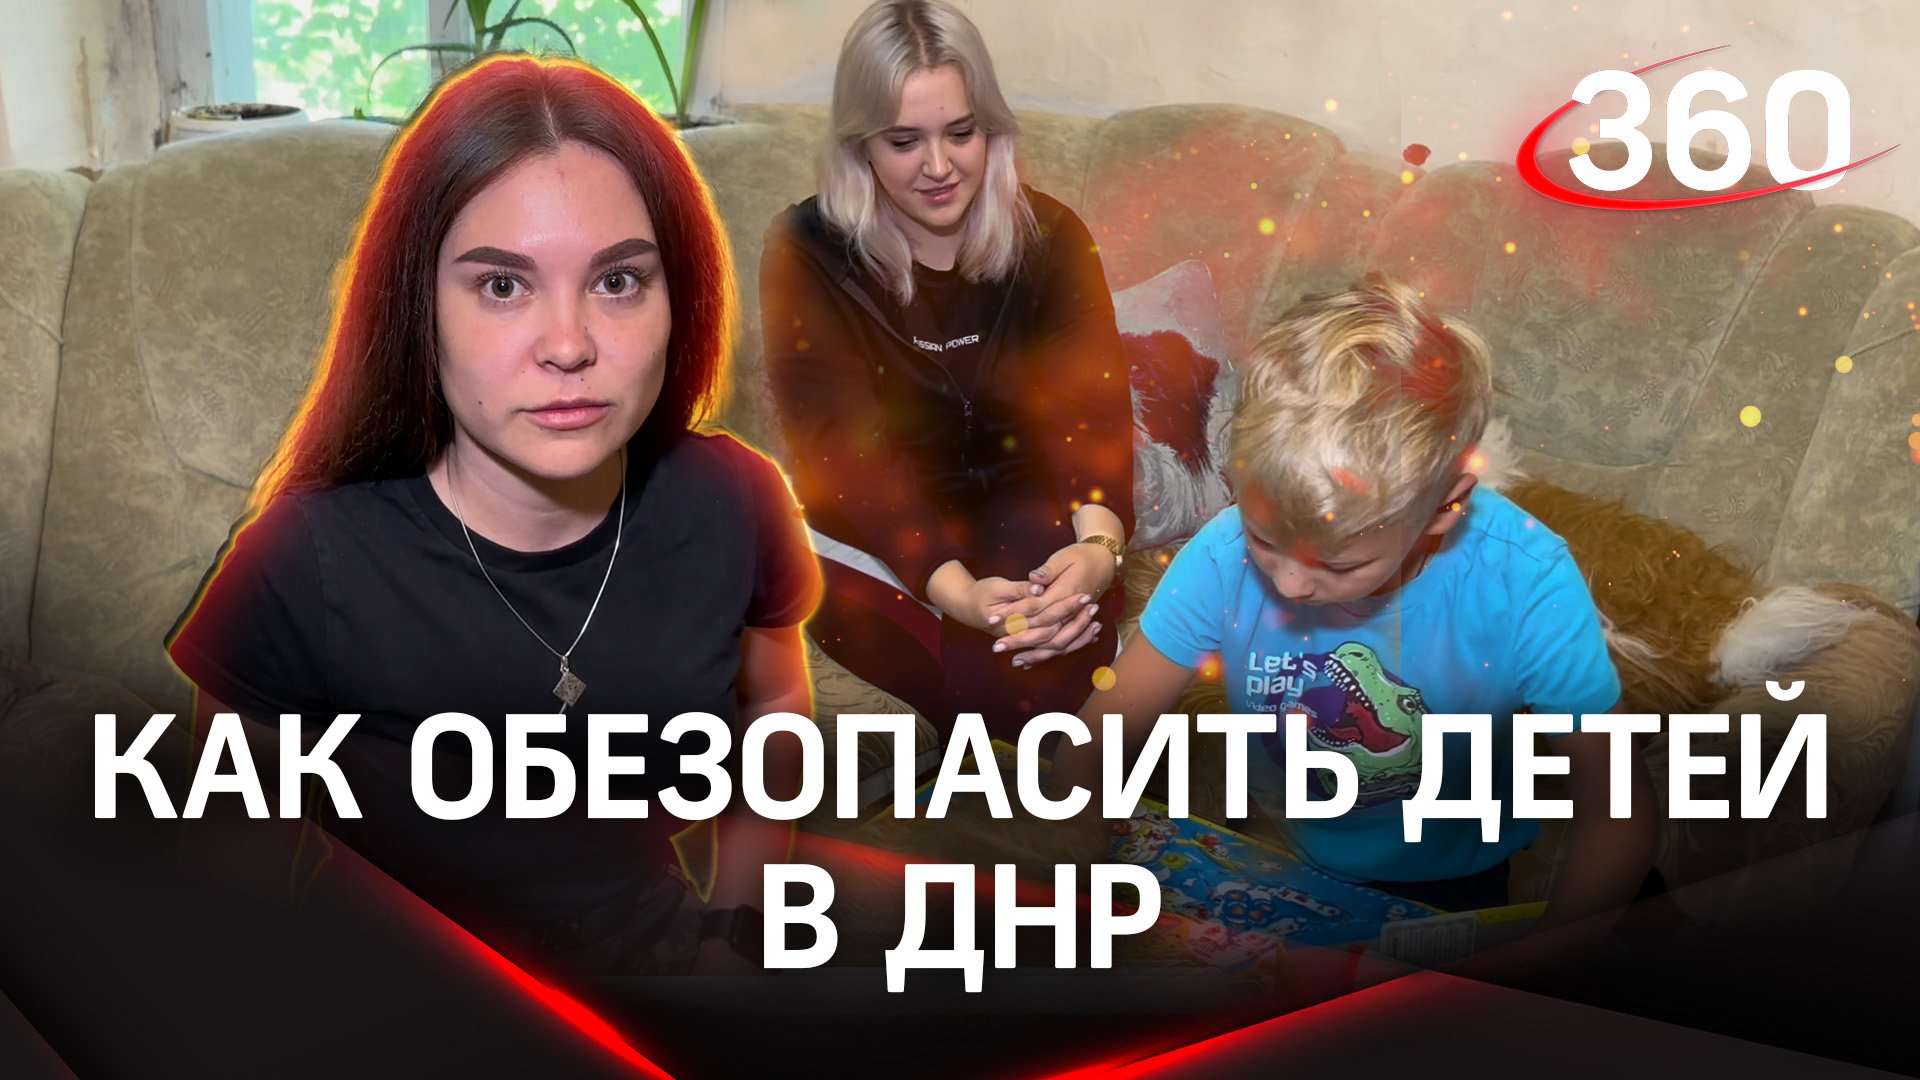 Правила безопасности детей в Донецке: как проводят свой досуг дети из ДНР